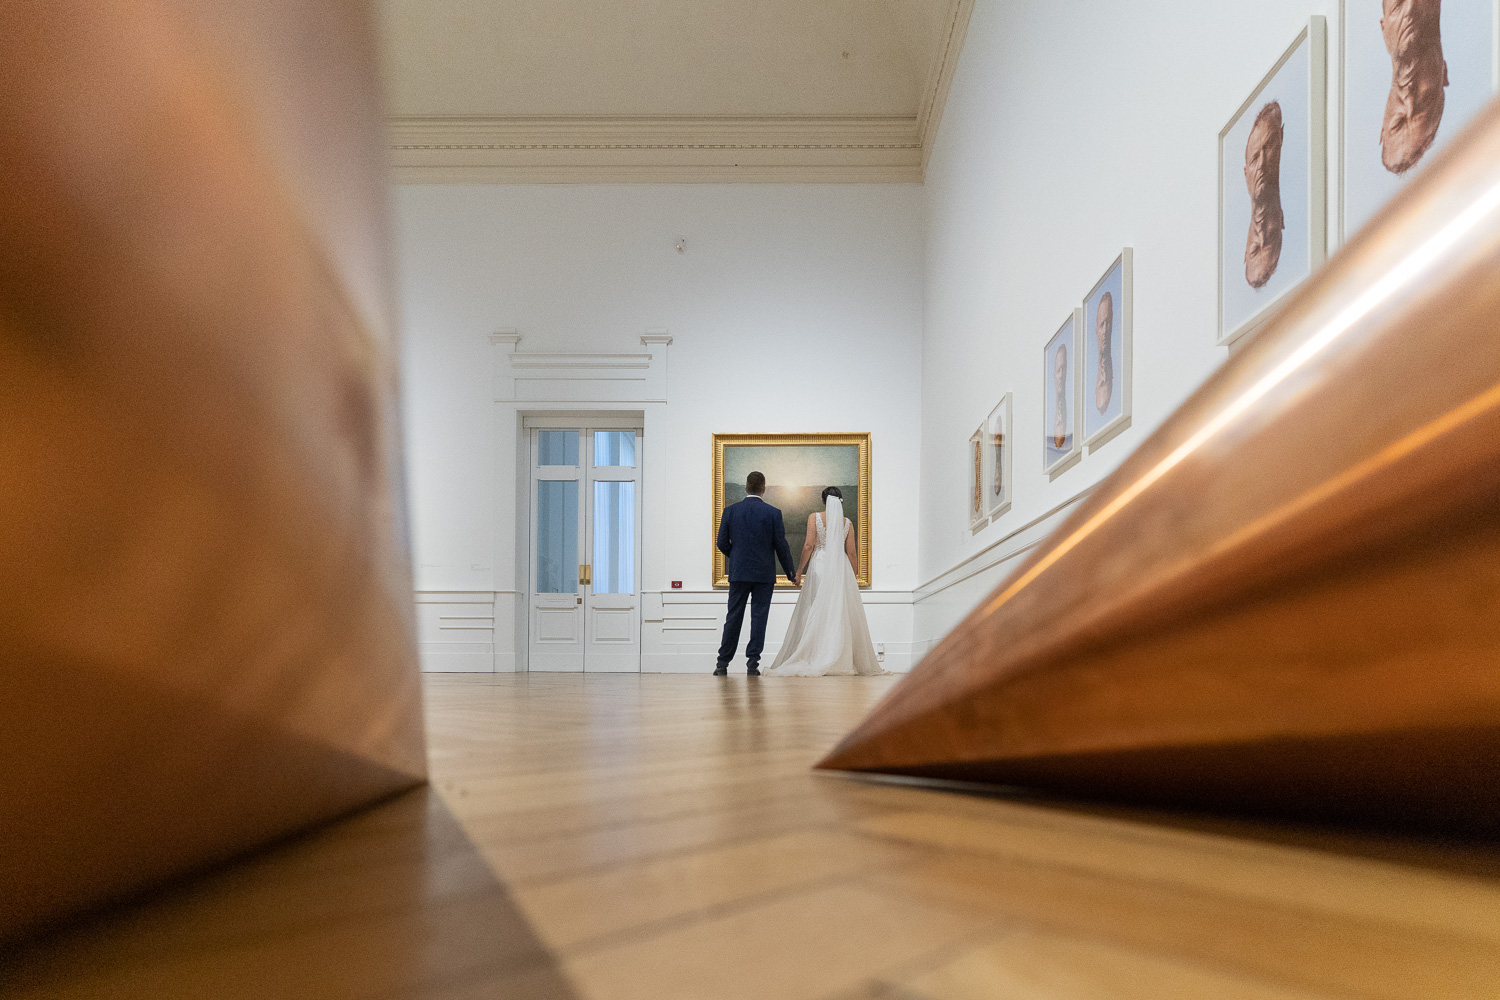 Matrimonio al museo, Galleria Nazionale d'Arte Moderna